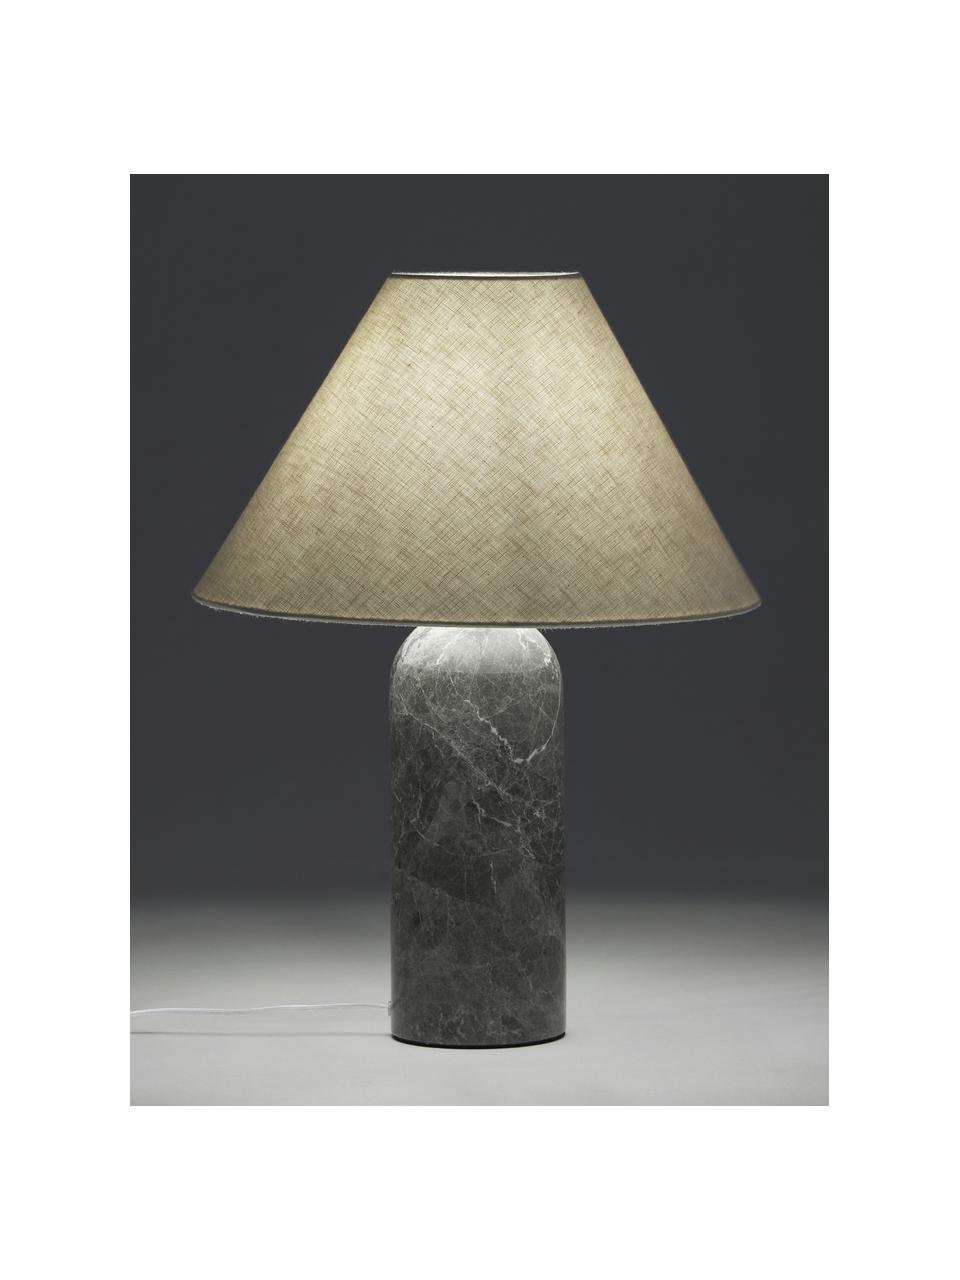 Grosse Tischlampe Gia mit Marmorfuss, Lampenschirm: 50% Leinen, 50% Polyester, Beige, Dunkelgrau, marmoriert, Ø 46 x H 60 cm